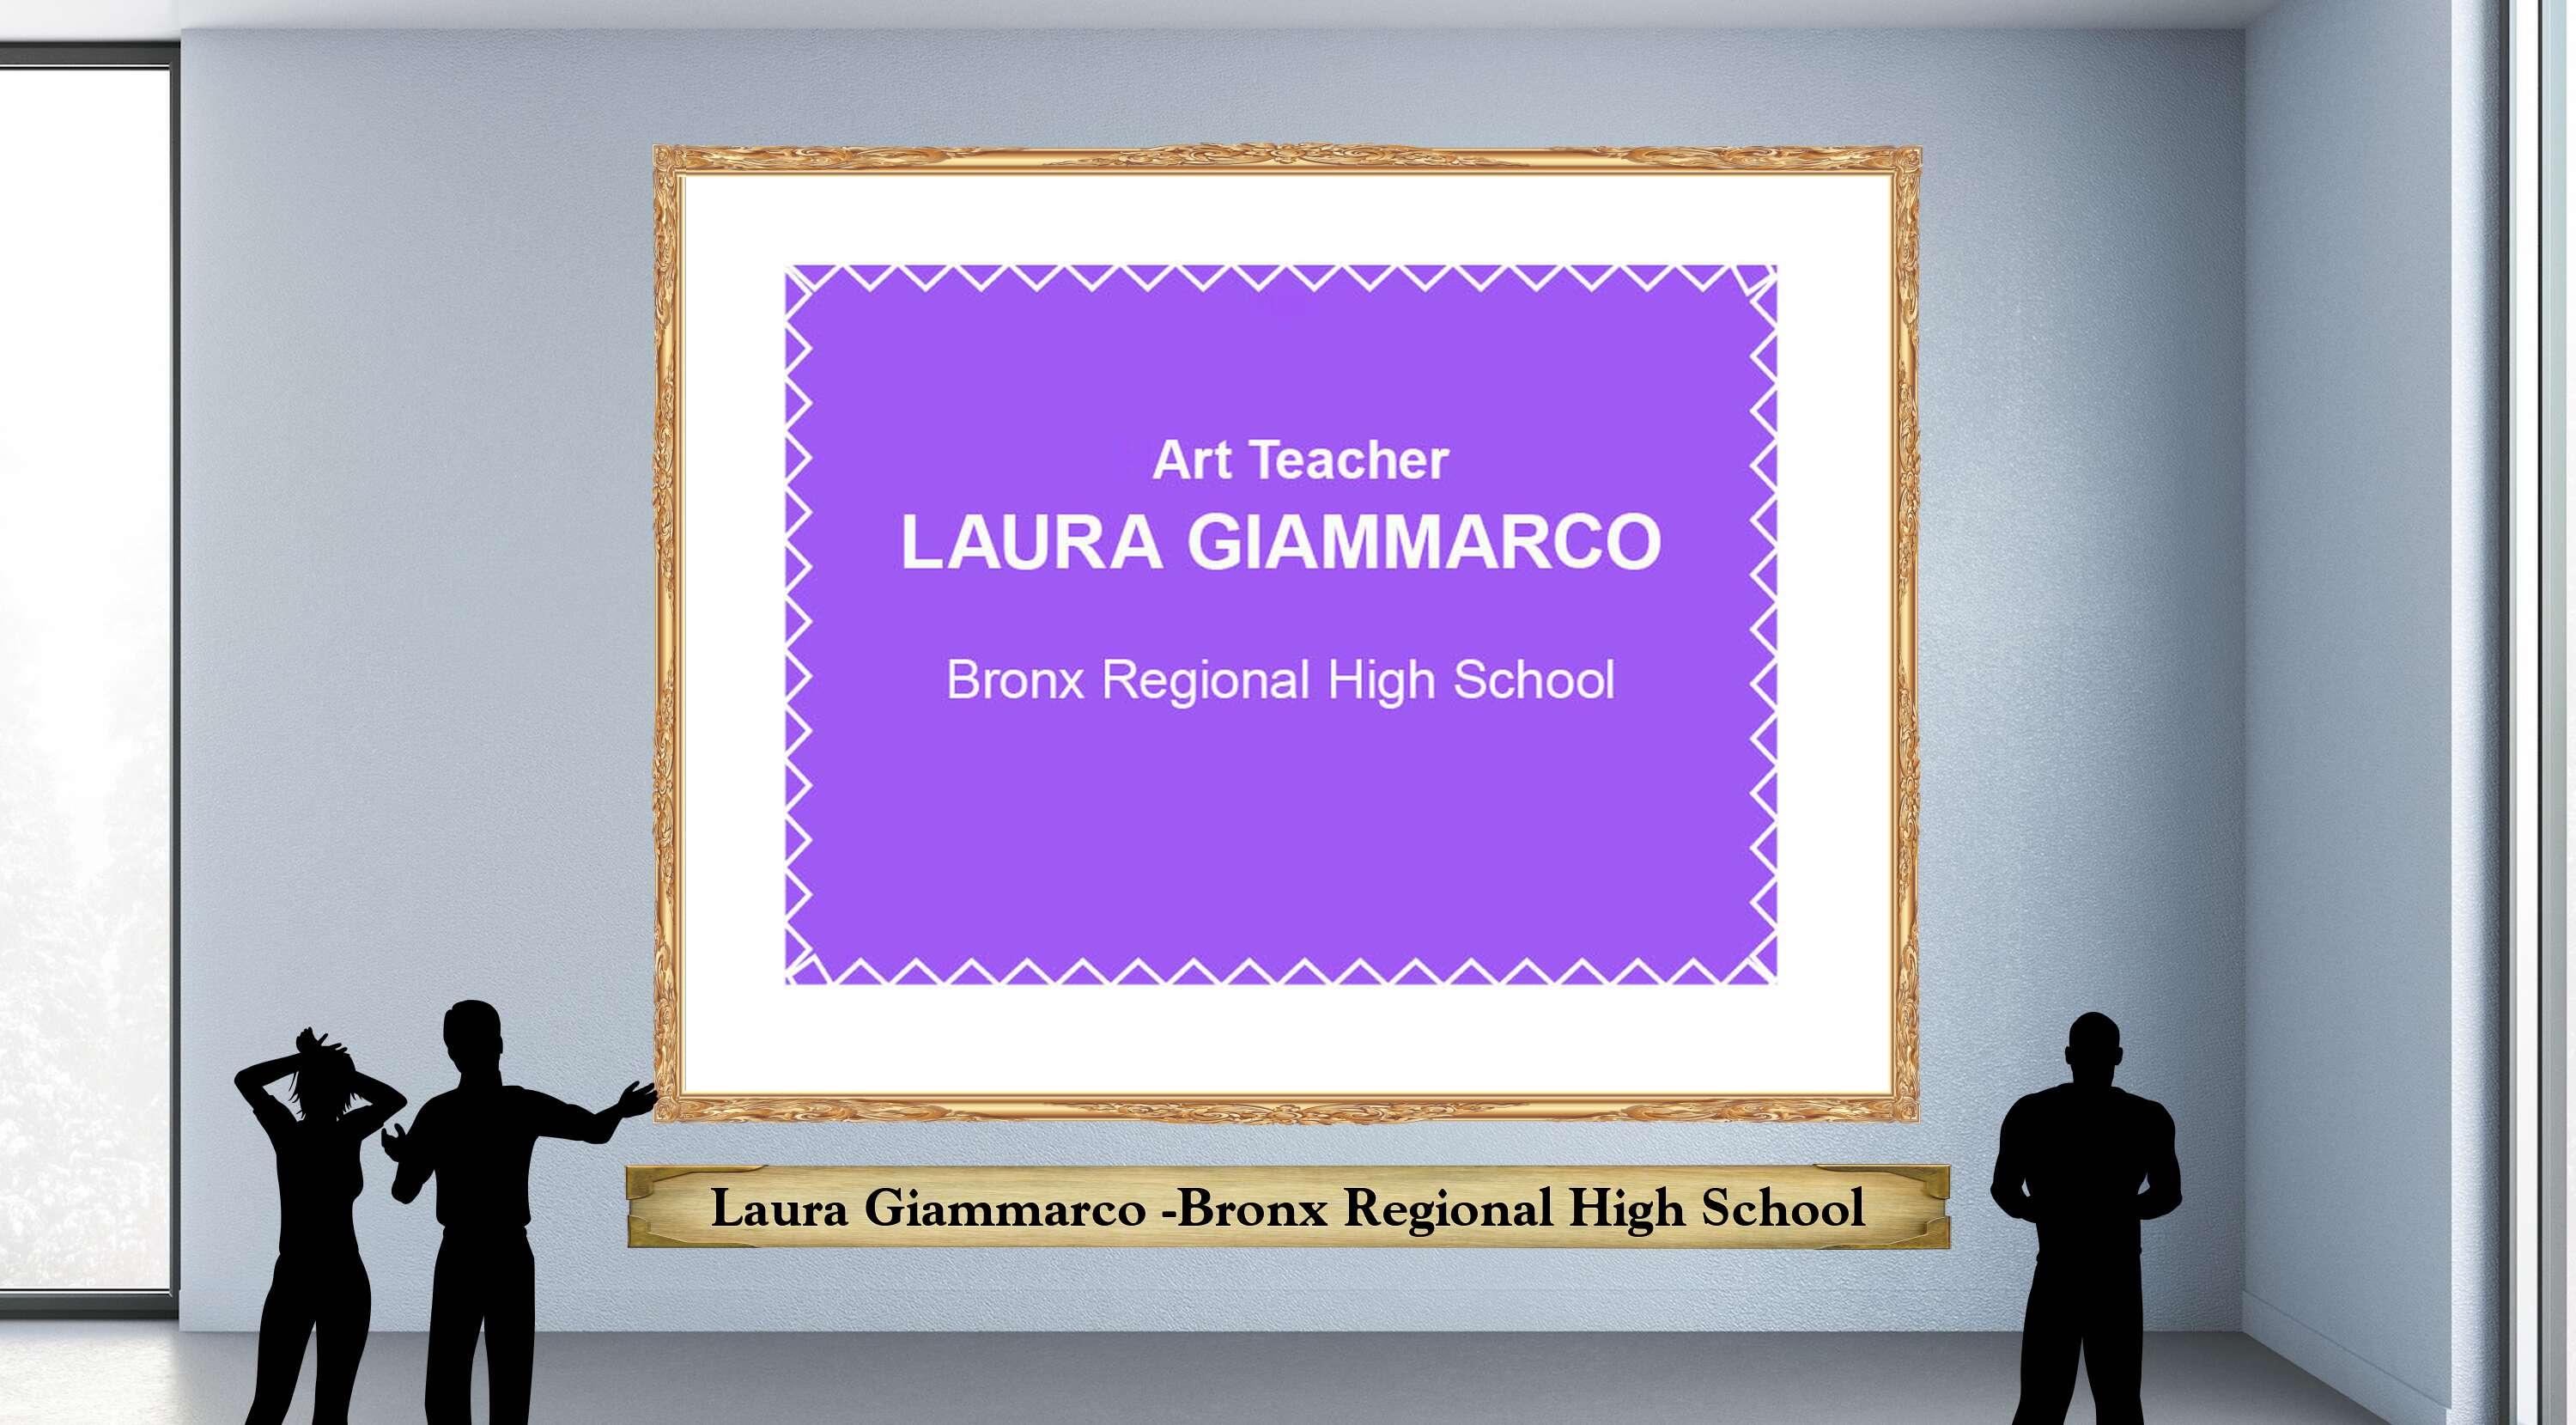 Laura Giammarco -Bronx Regional High School